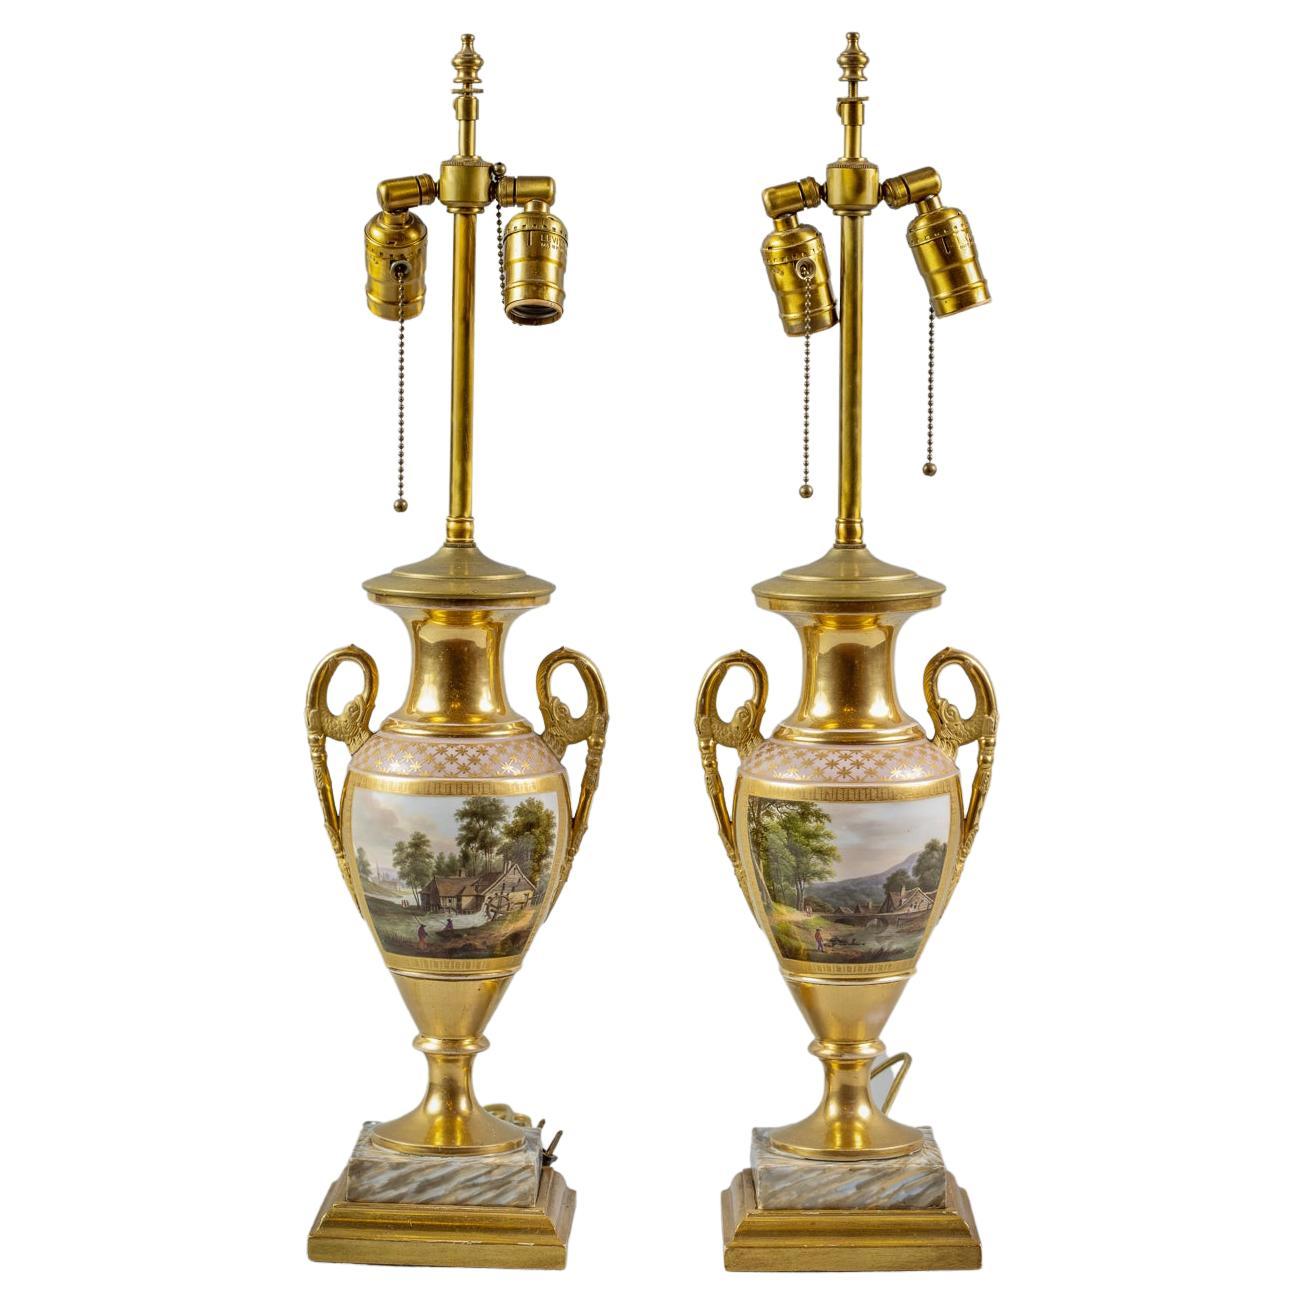 Paire de vases à deux poignées en porcelaine de Paris servant de lampes, vers 1820